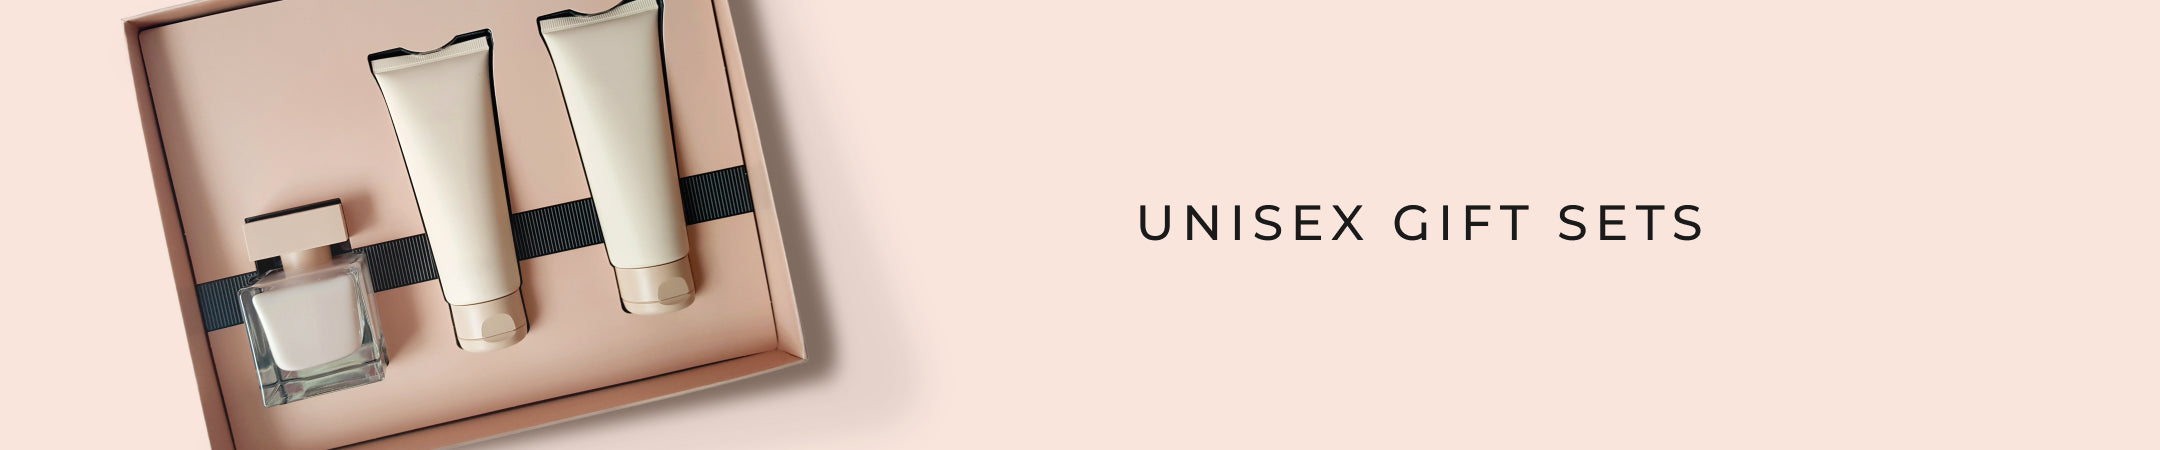 Unisex Gift Sets